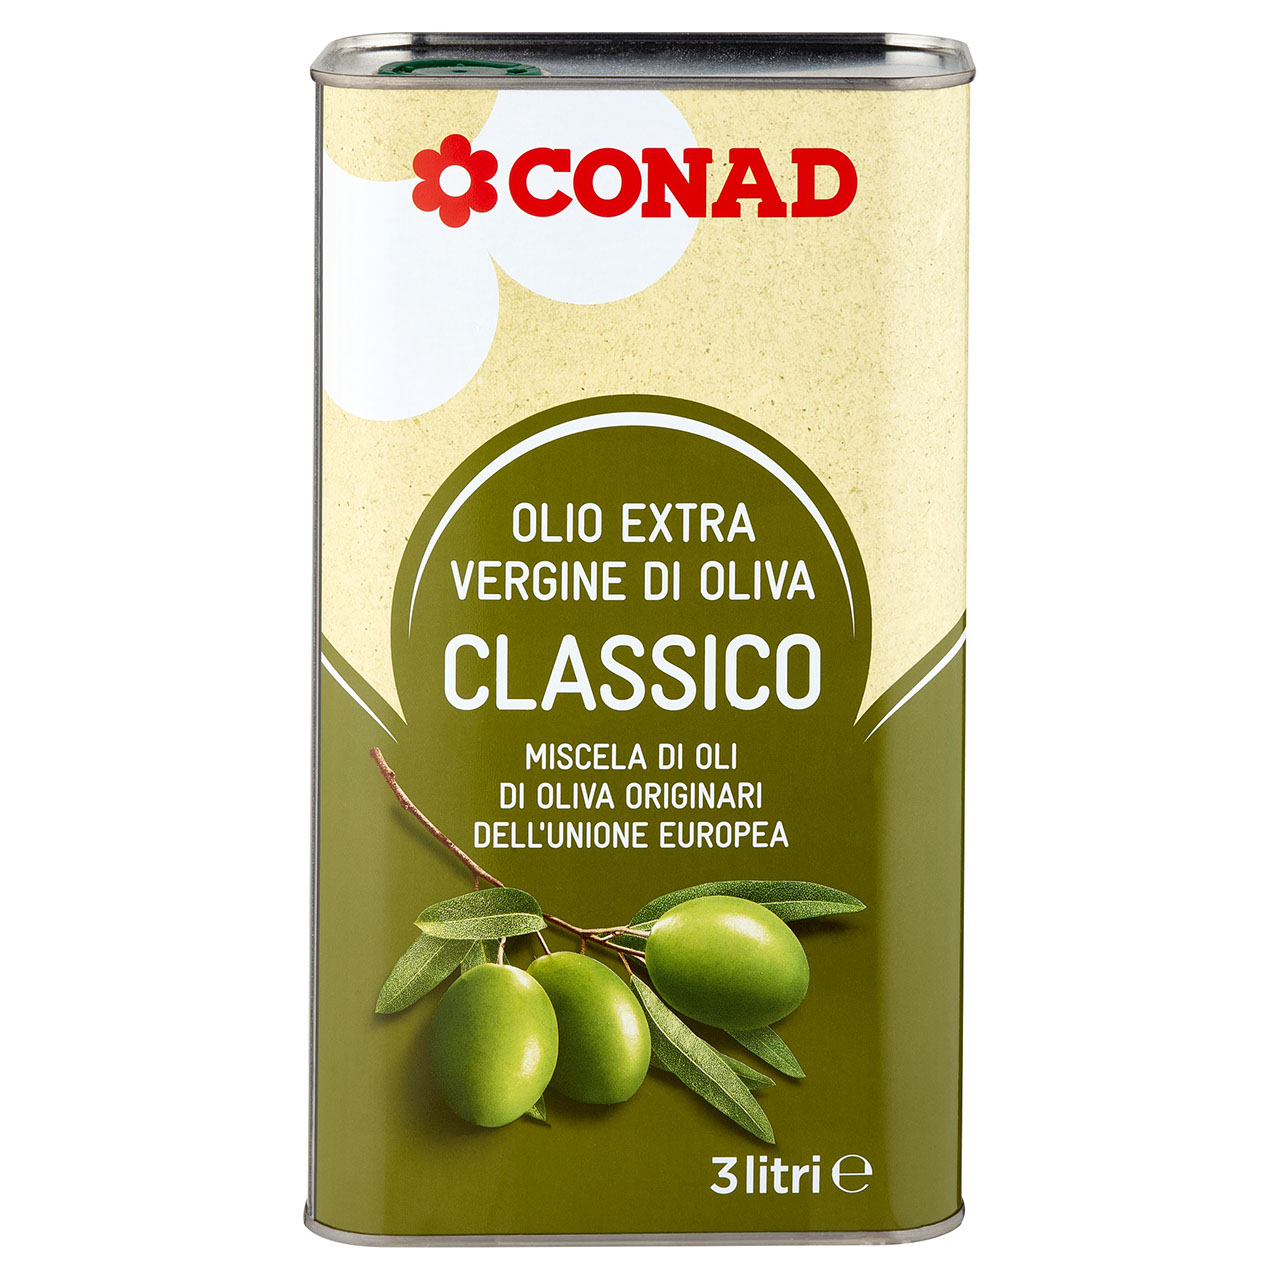 CONAD Olio Extra Vergine di Oliva Classico 3 litri